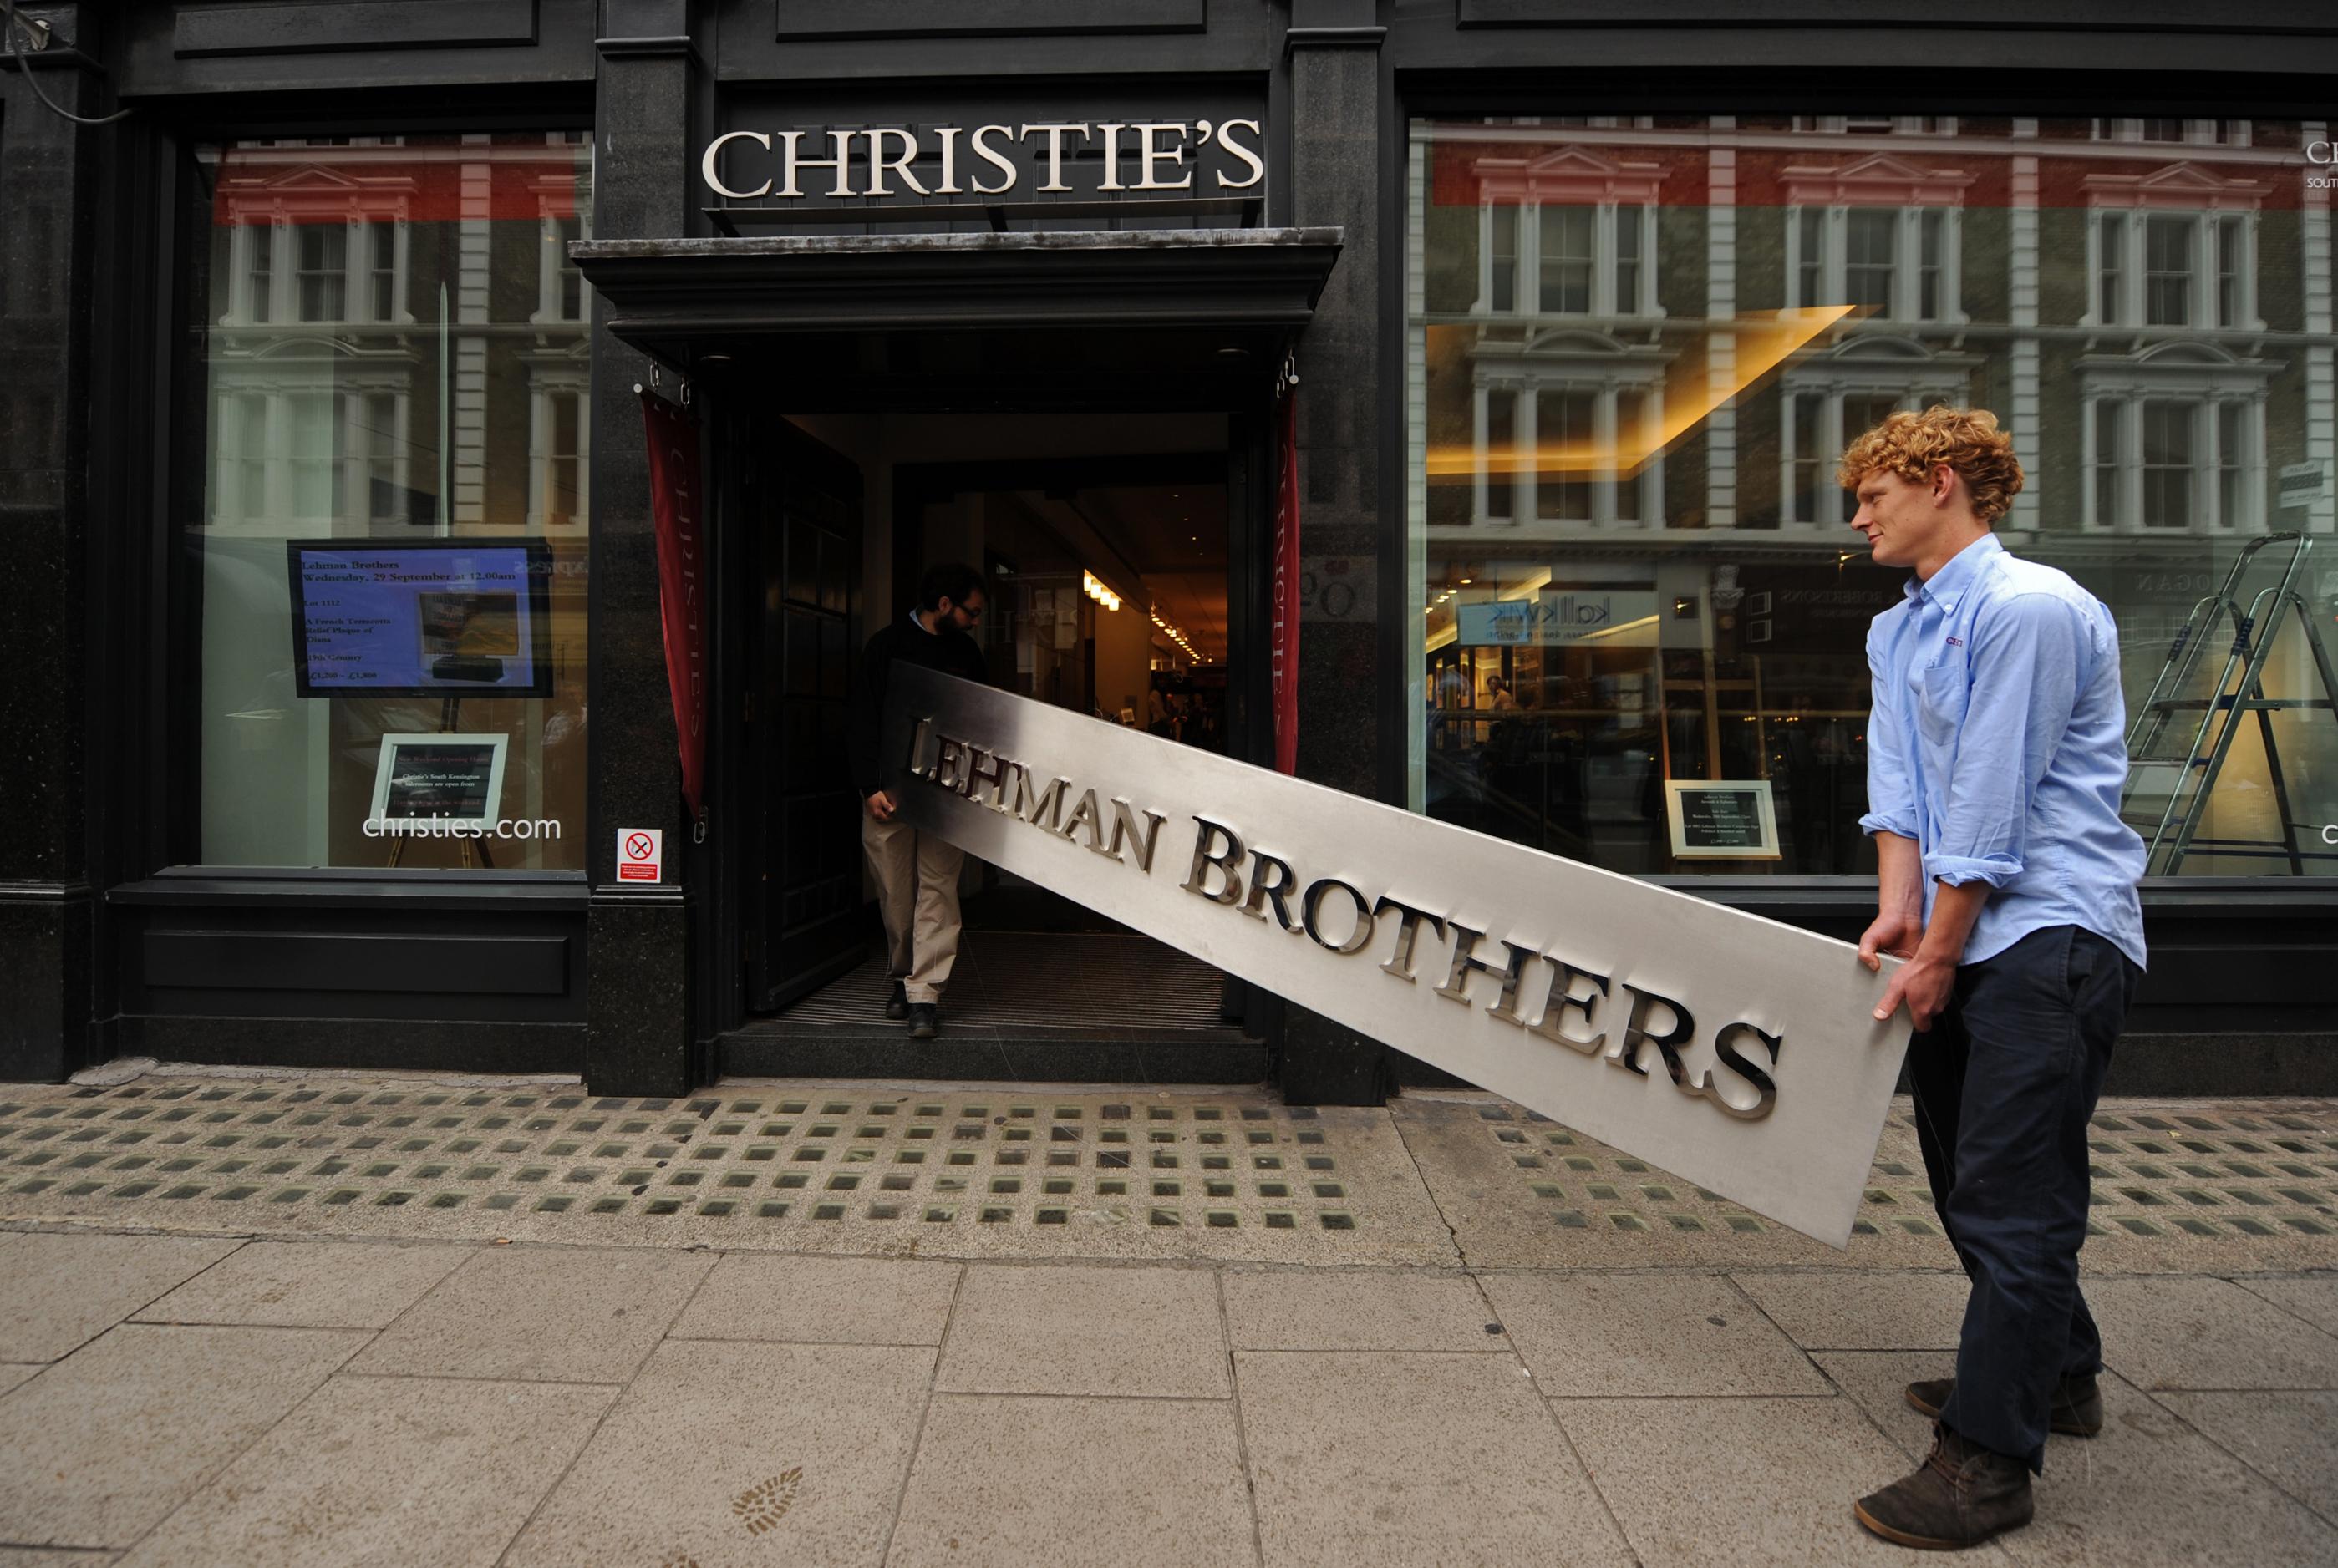 Anställda på auktionsfirman Christie's poserar med en nedtagen Lehman Brothers-skylt som såldes 2010. Det kommer dock inte att bli något sådant dramatiskt ögonblick för det skuldtyngda Kina, som när Lehman Brothers gick omkull, tror investeringsexperten Paul Krake, men läget är ändå dystert. (Foto: Ben Stansall/AFP/Getty Images)